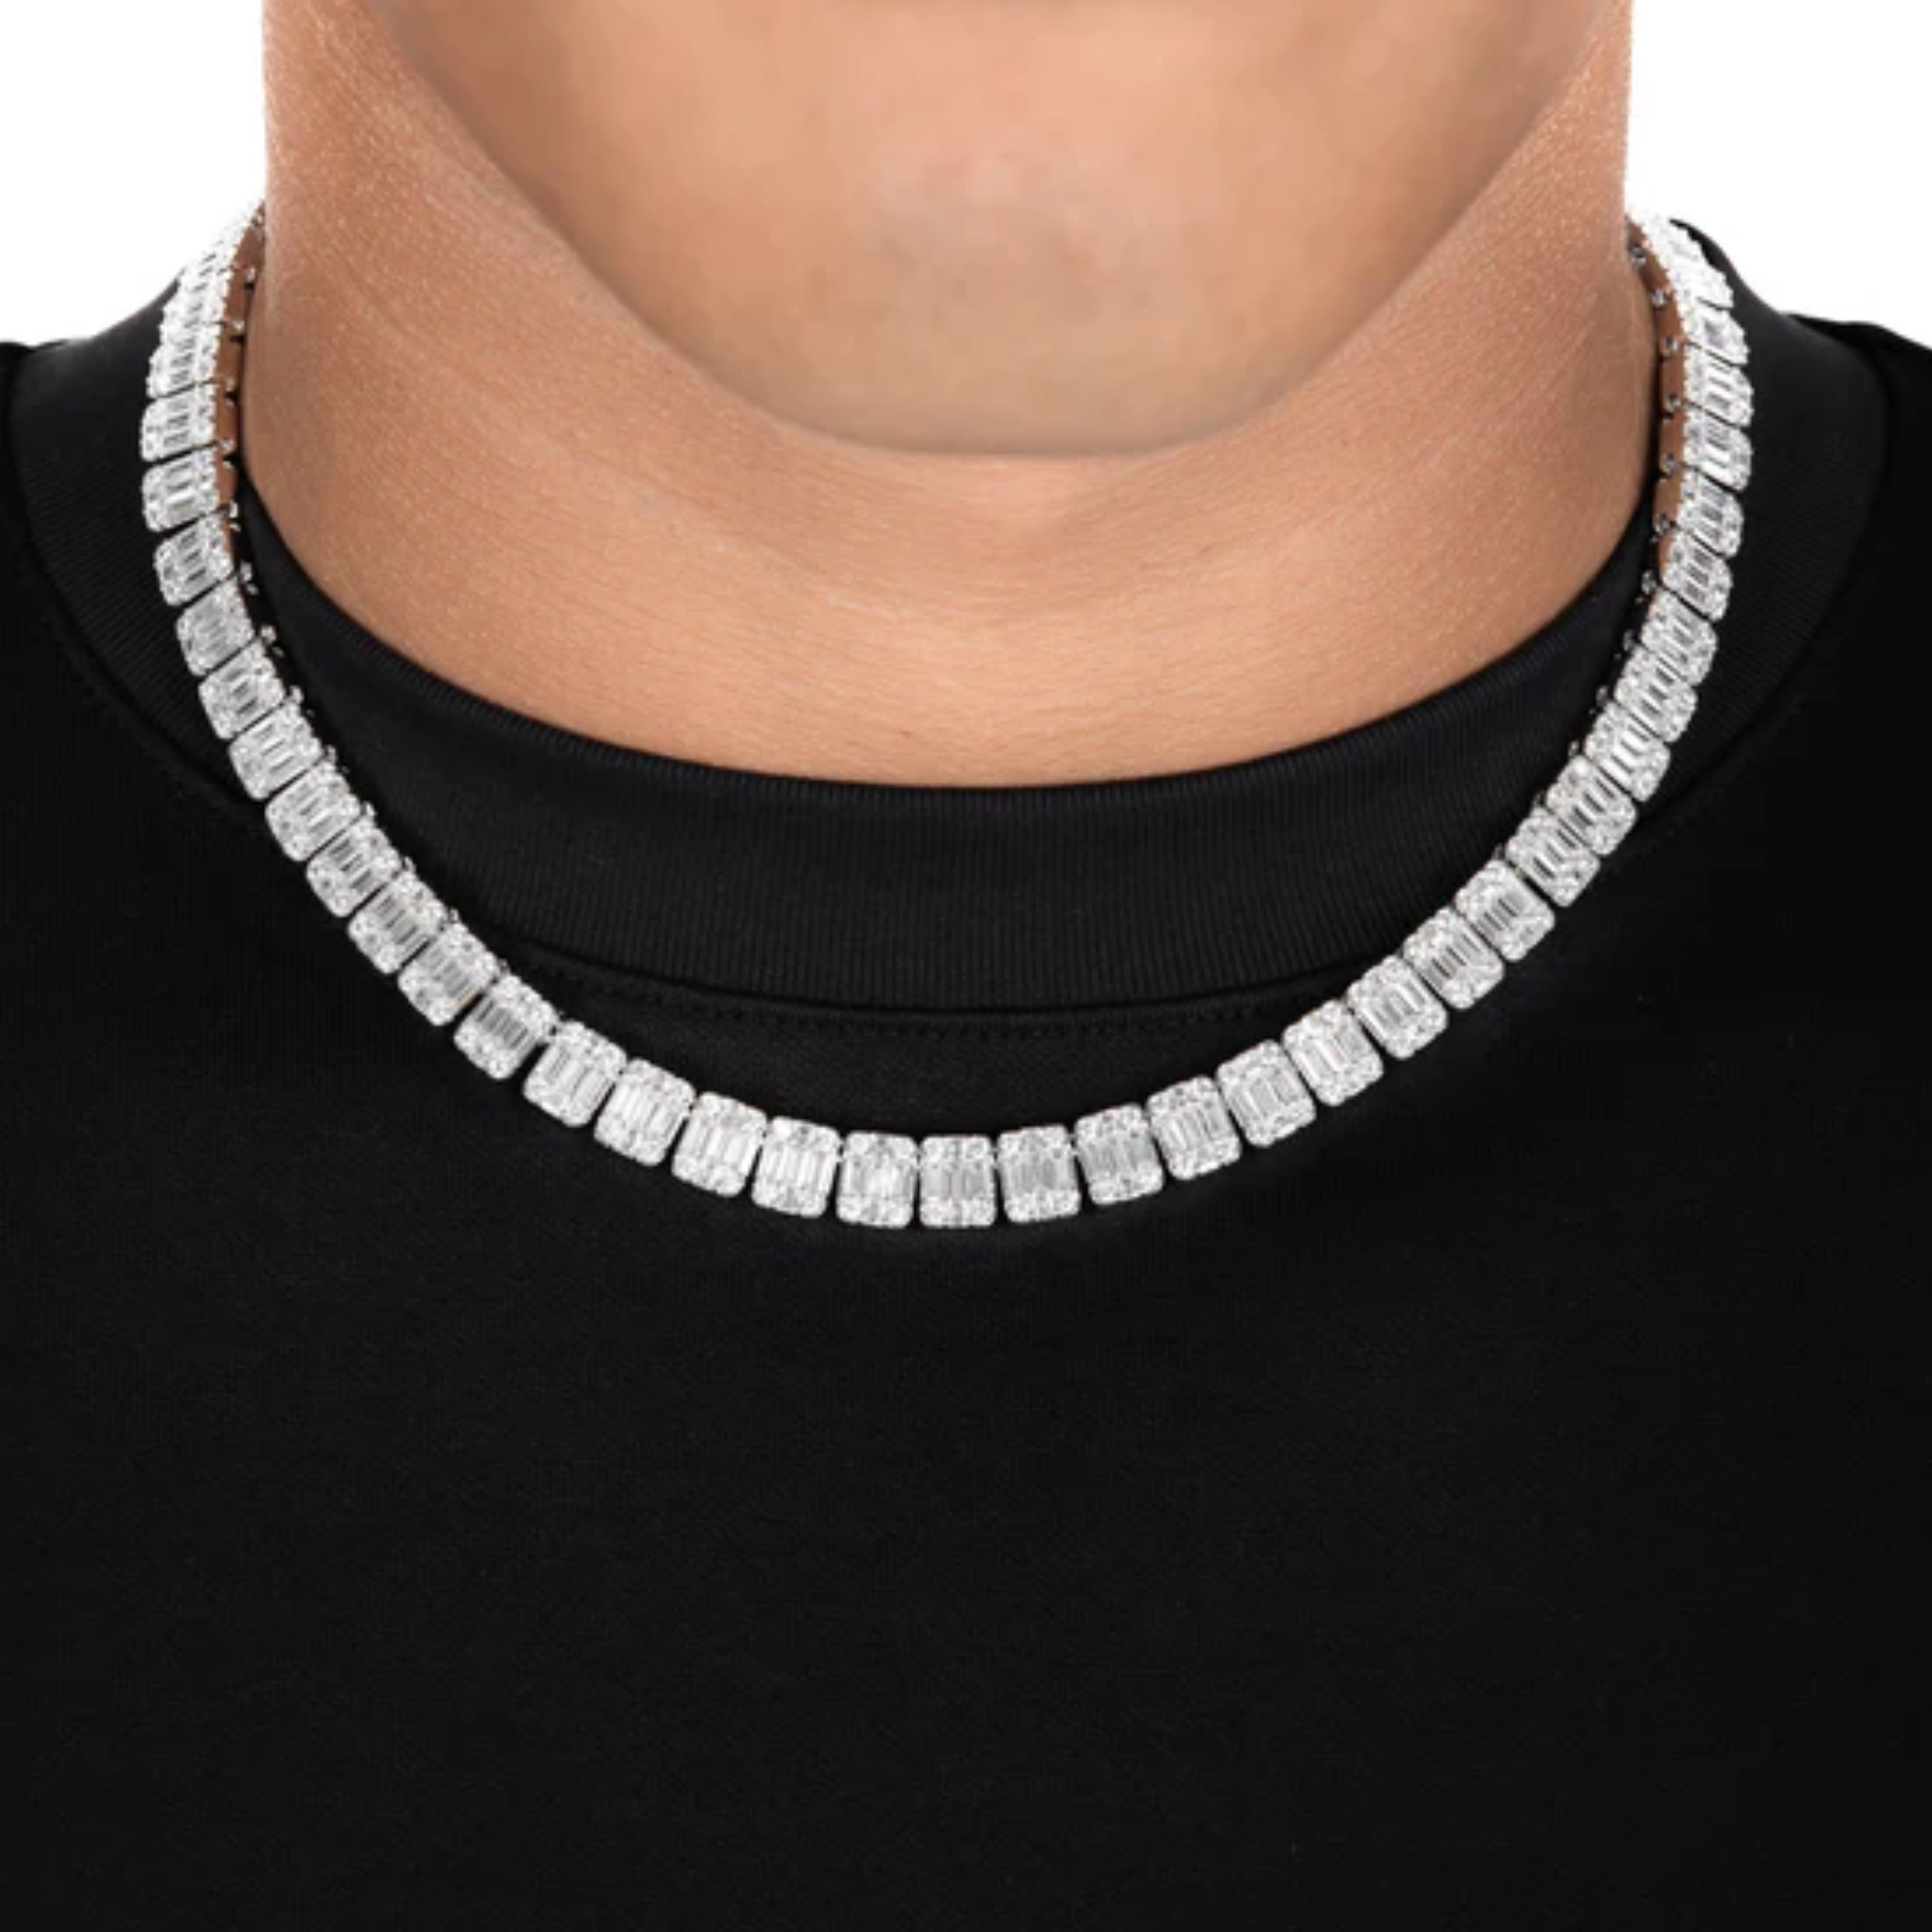 S925 Square Baguette Moissanite Diamond Tennis Necklace - 10mm